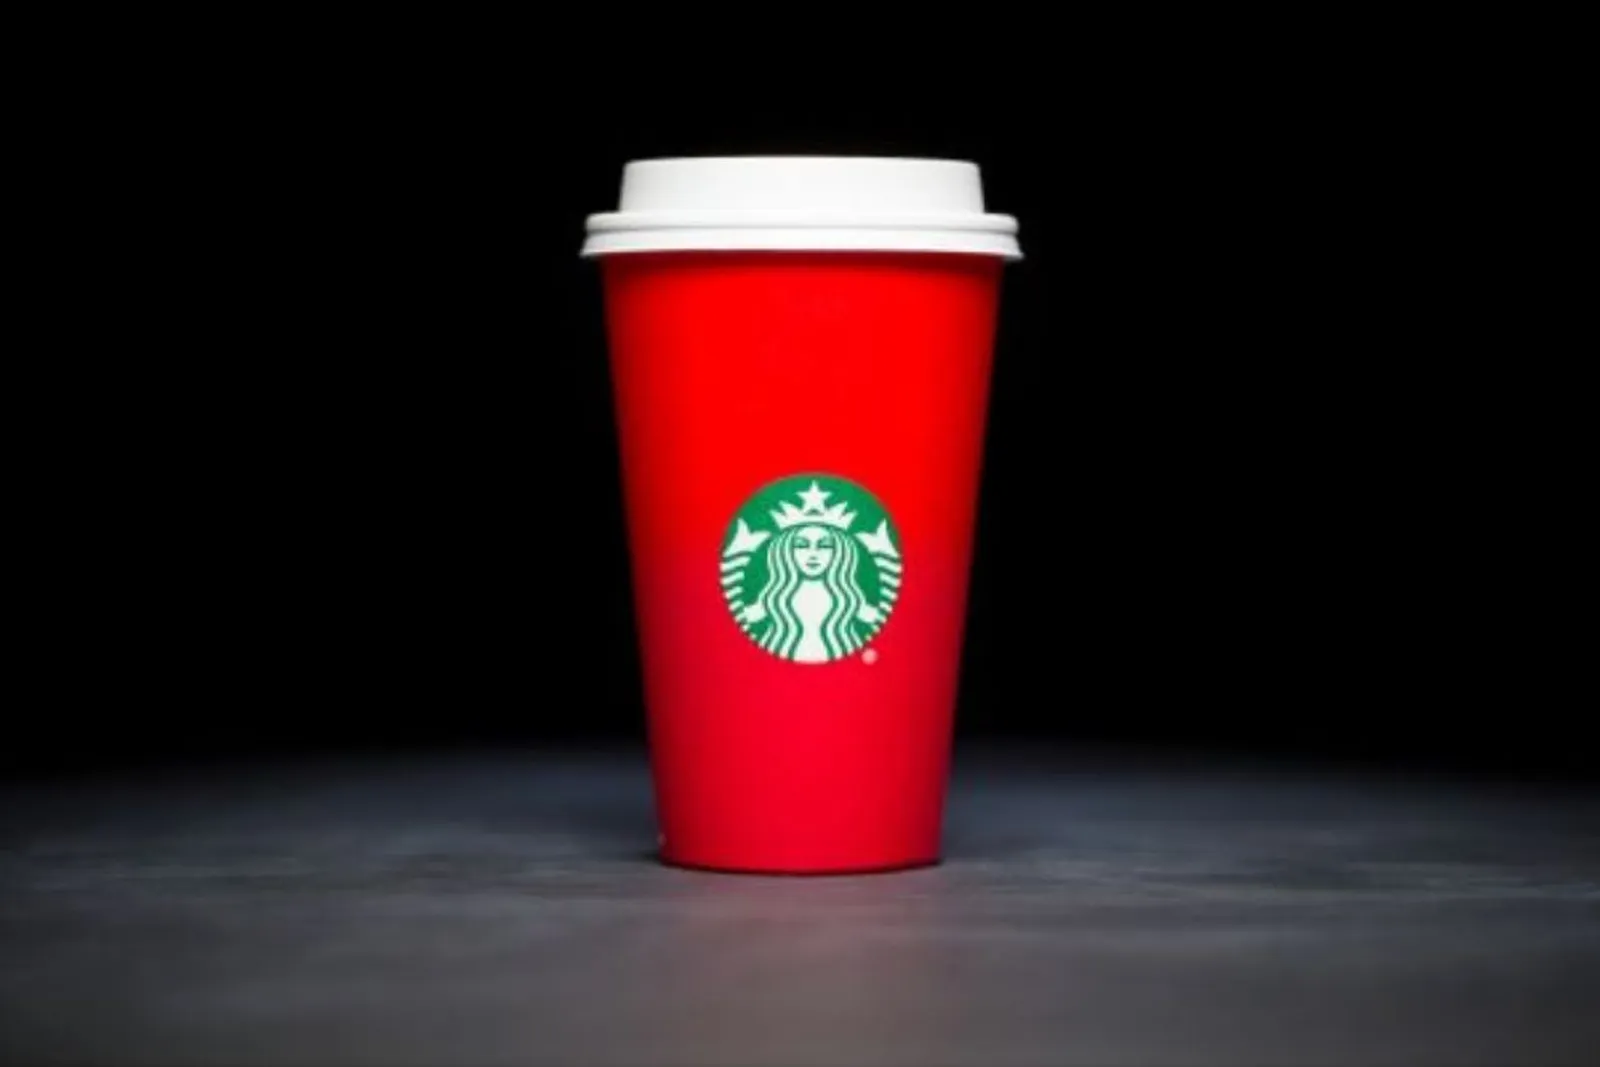 Selalu Ditunggu, Ini Desain Cup Starbucks 10 Tahun Terakhir